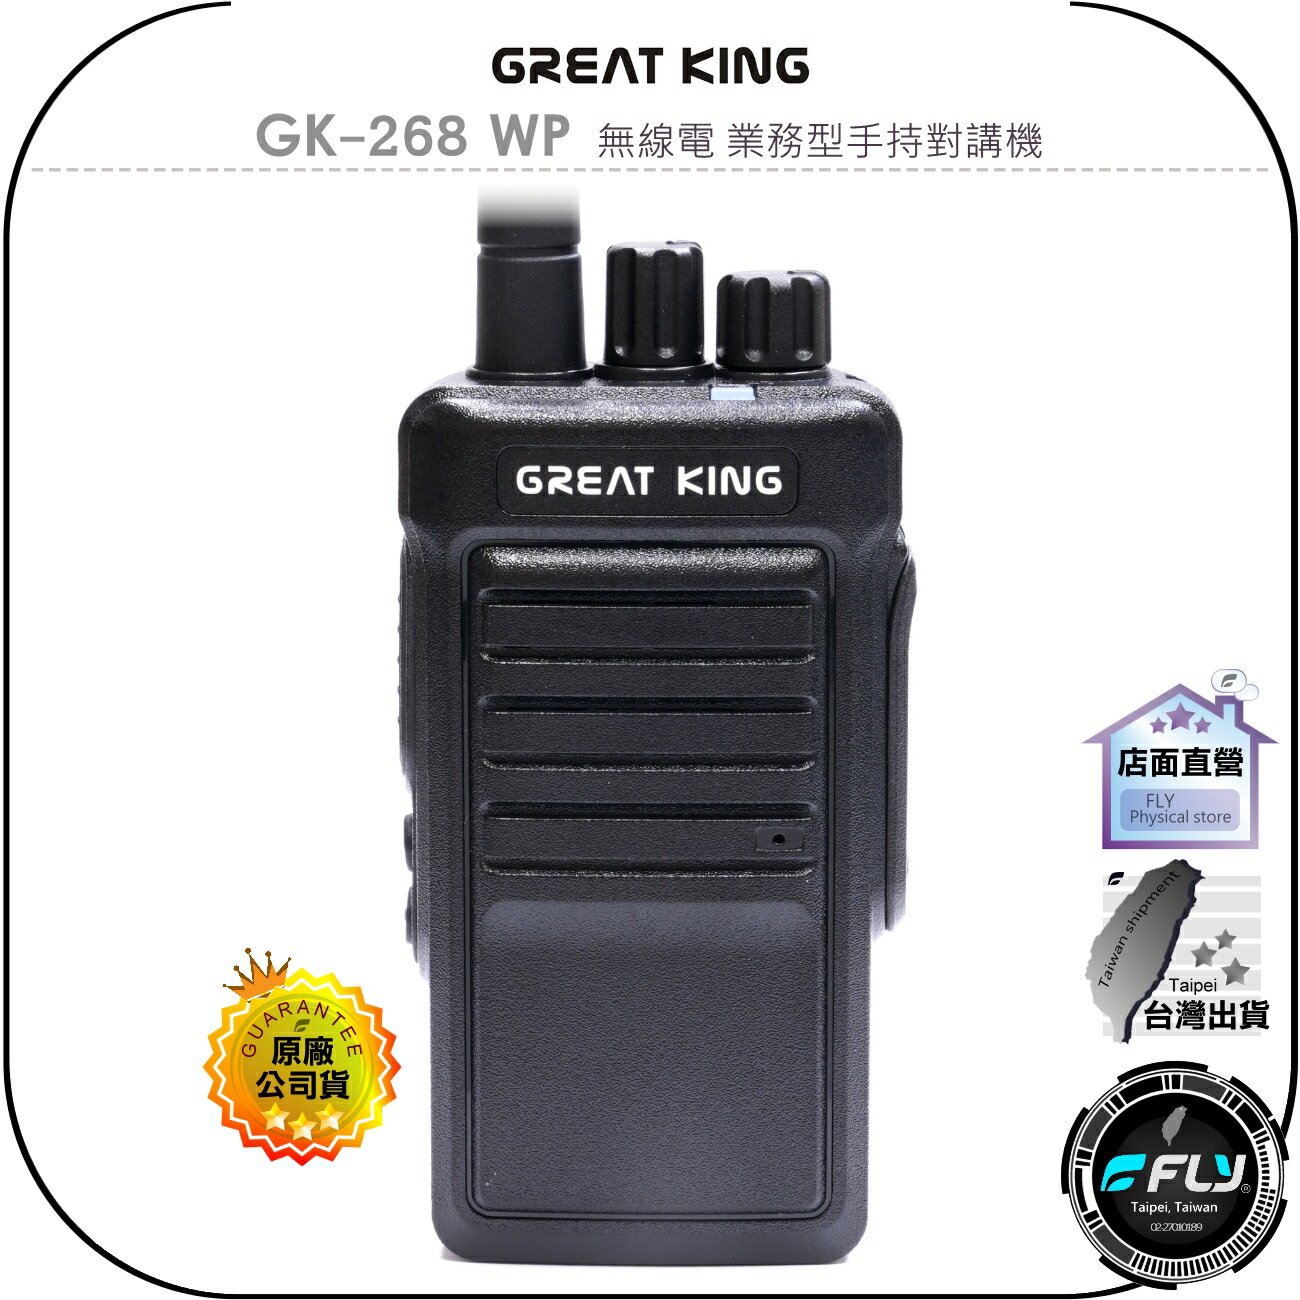 【飛翔商城】GREAT KING GK-268 WP 無線電 業務型手持對講機◉公司貨◉IP68防水◉10W大功率